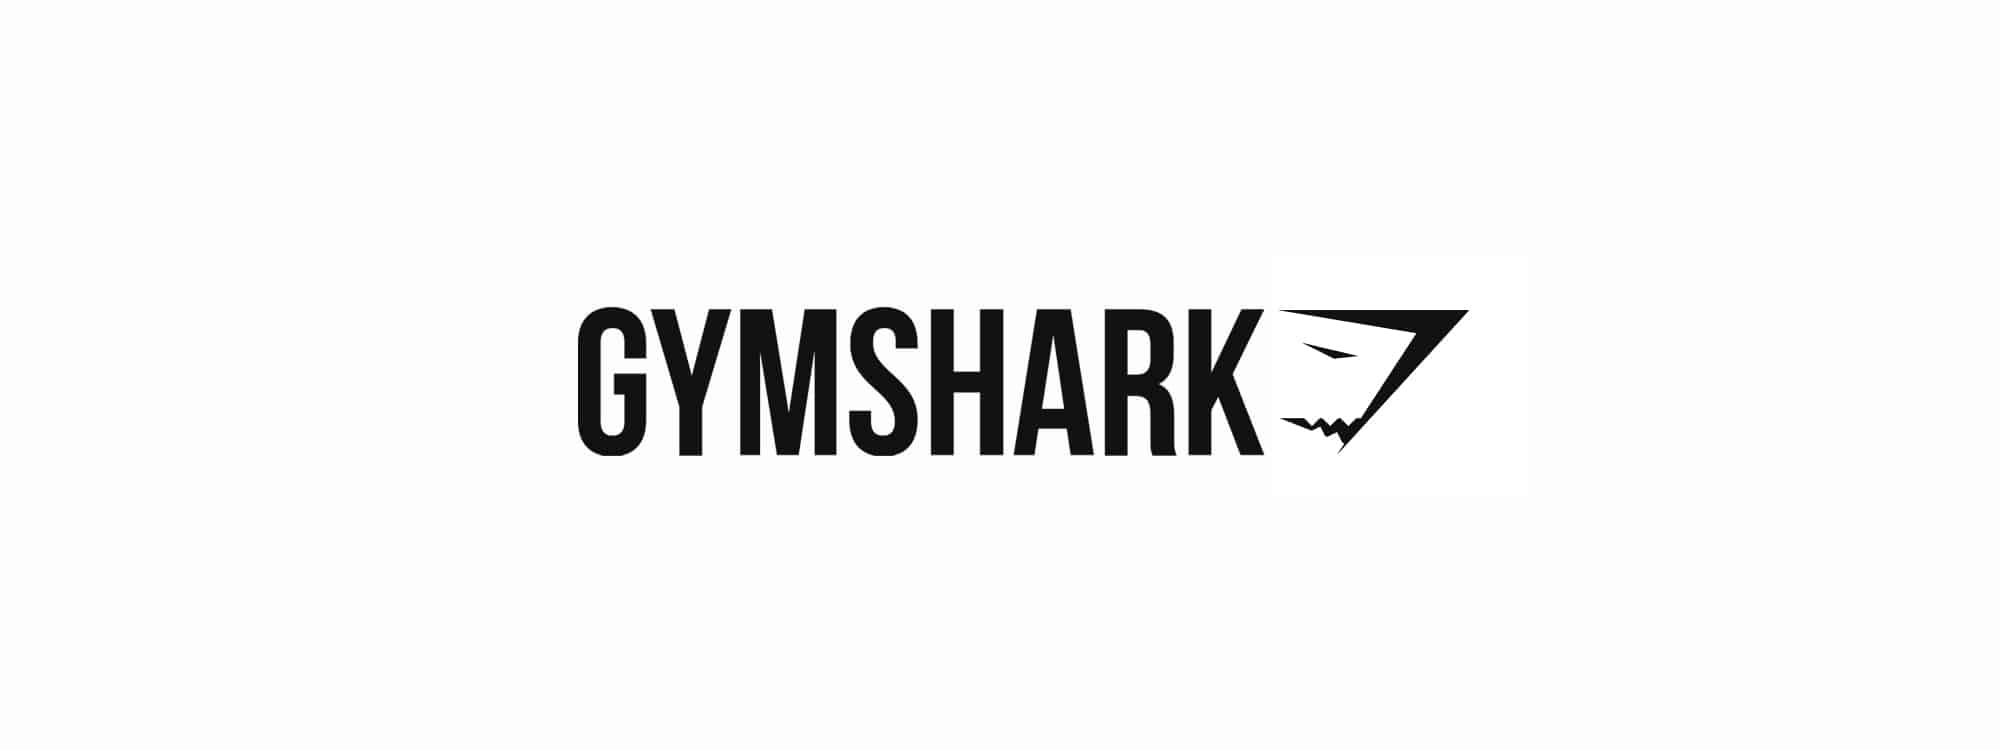 Gymshark Logo Design